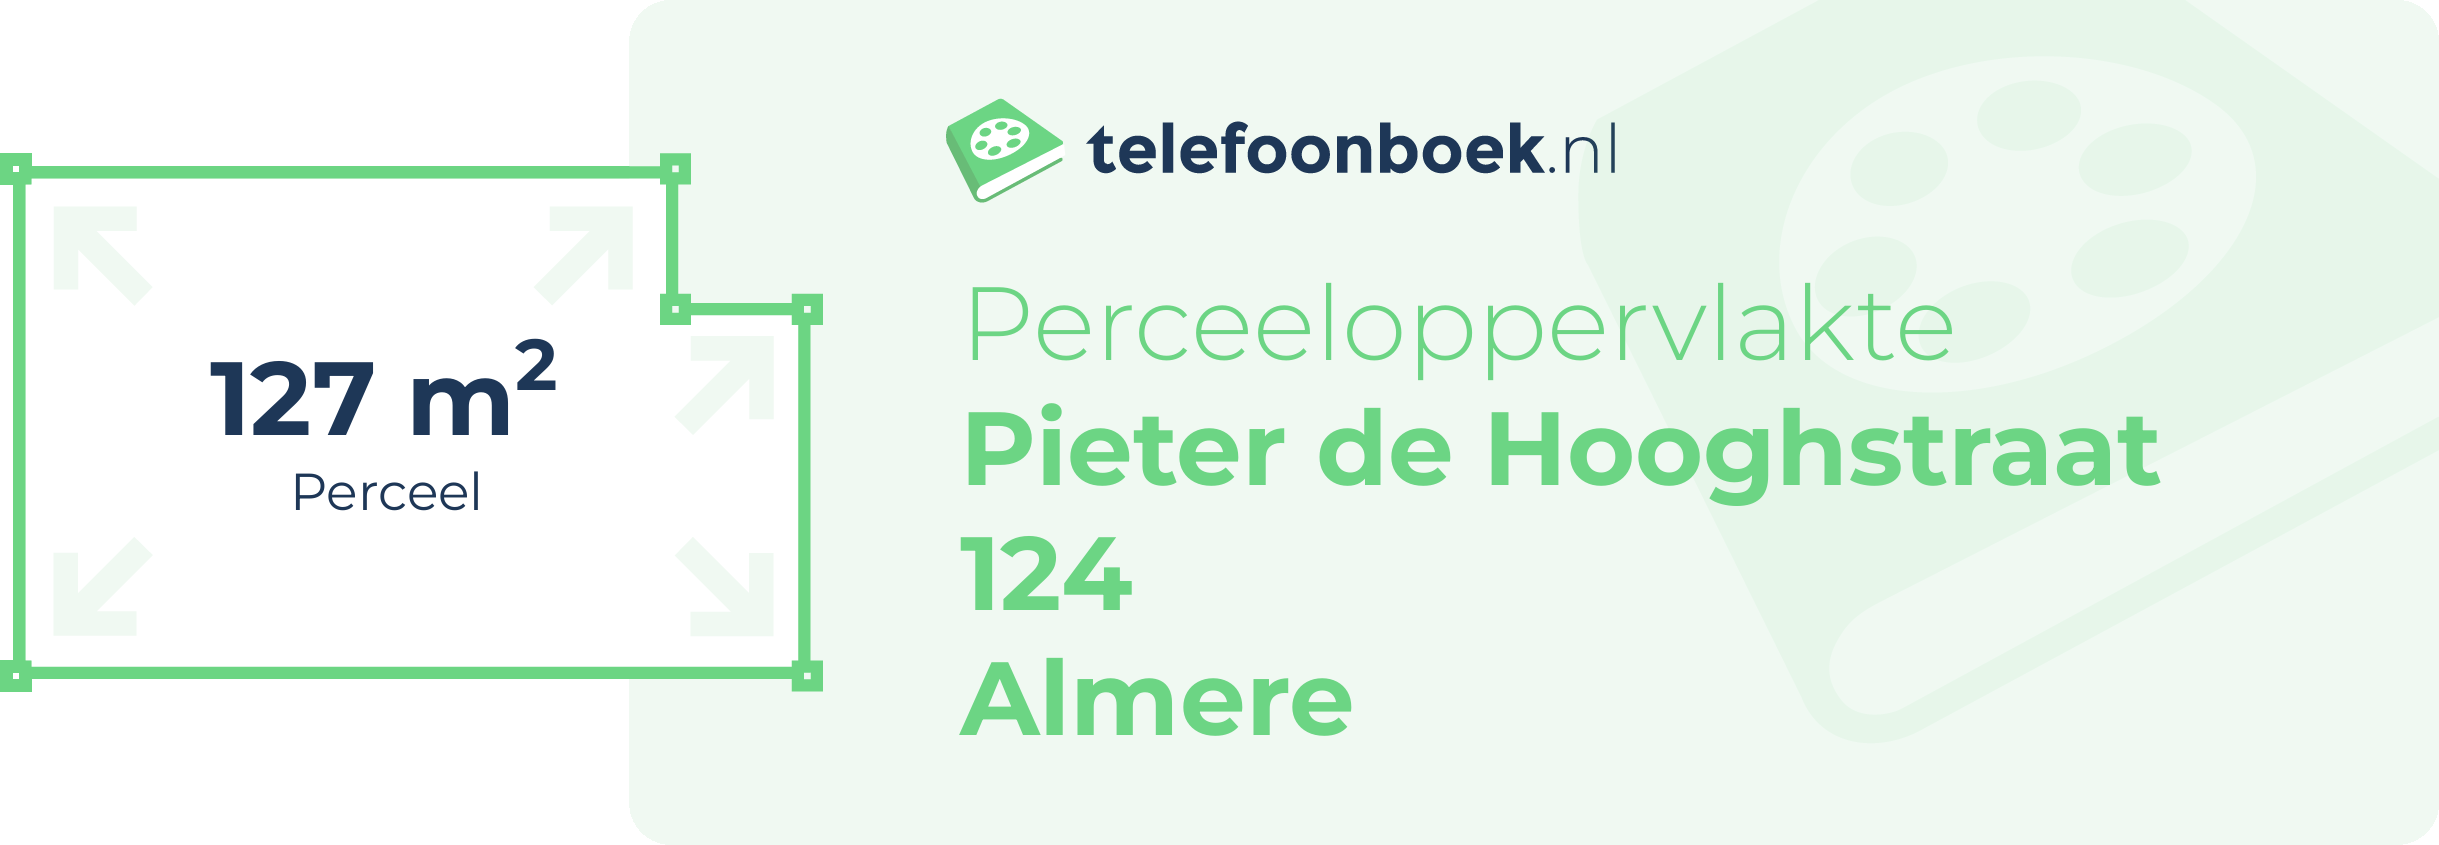 Perceeloppervlakte Pieter De Hooghstraat 124 Almere